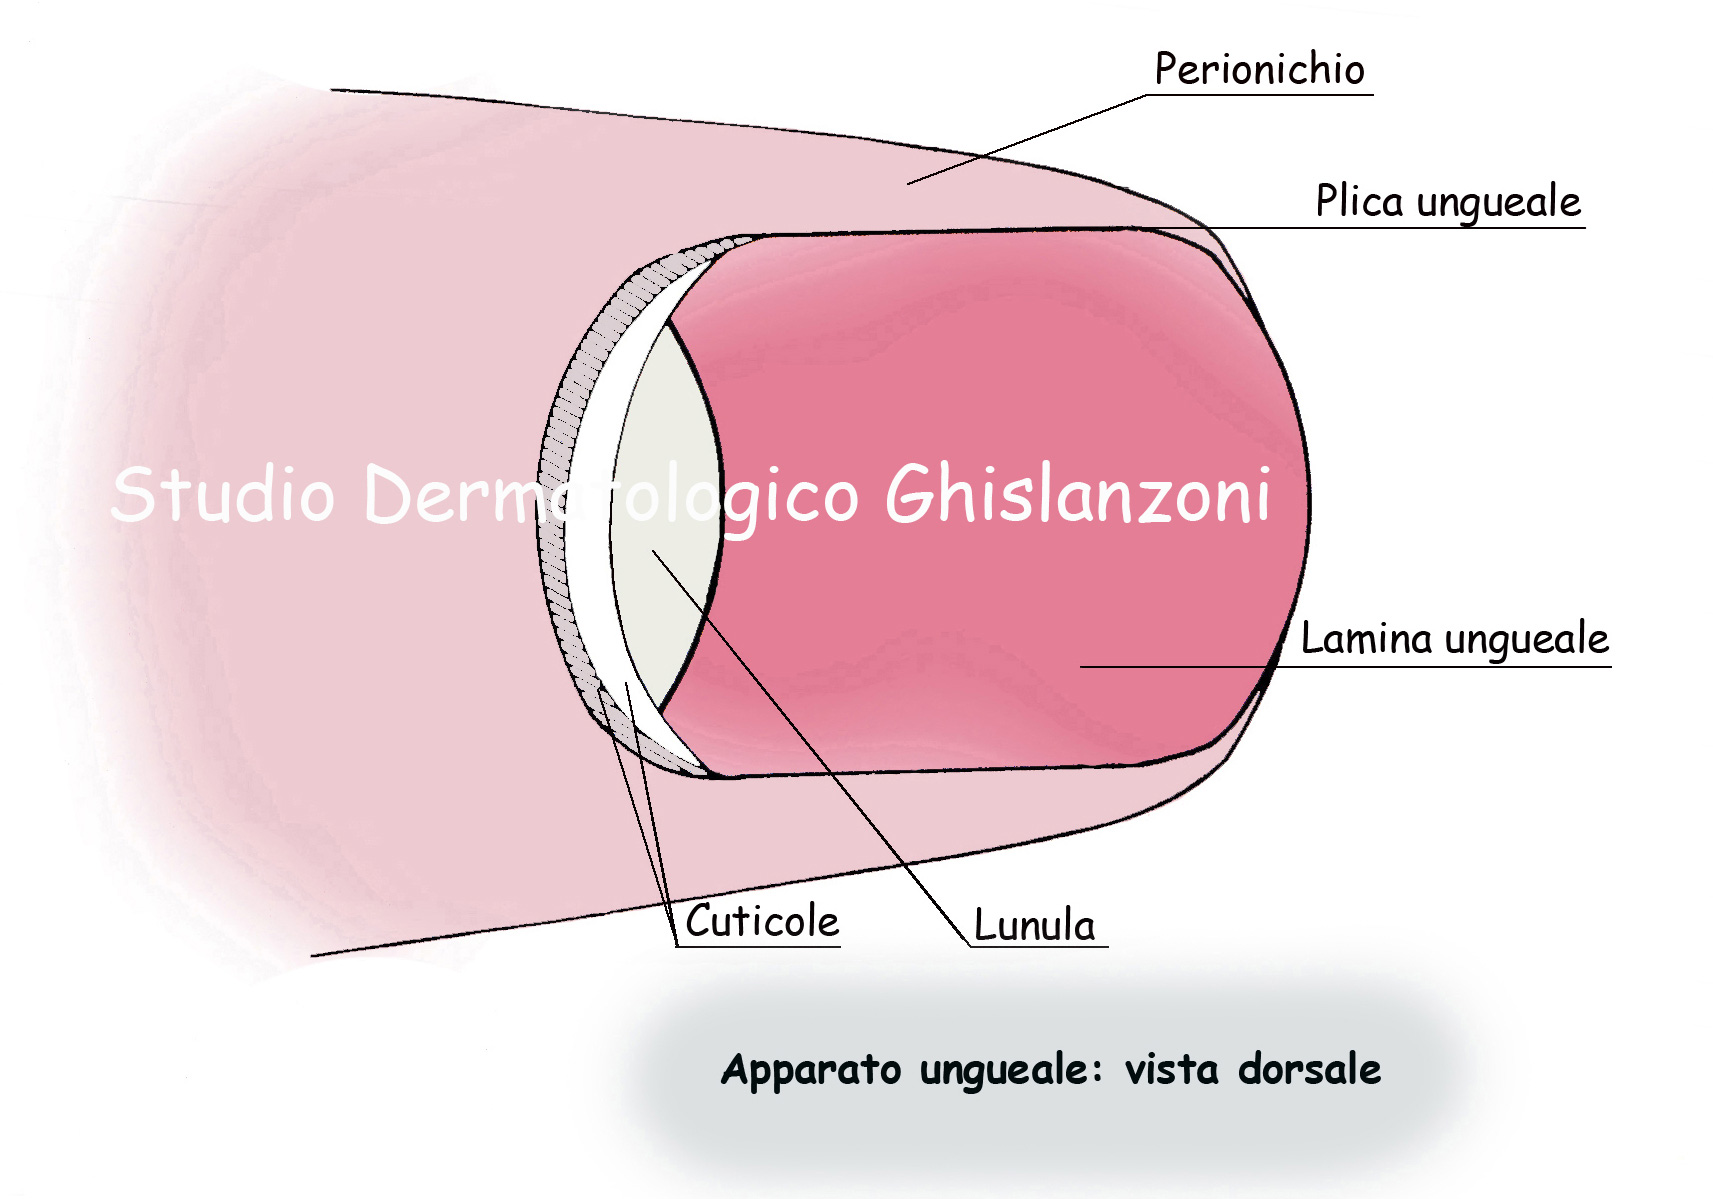 Anatomia dell'Unghia sana vista dorsale